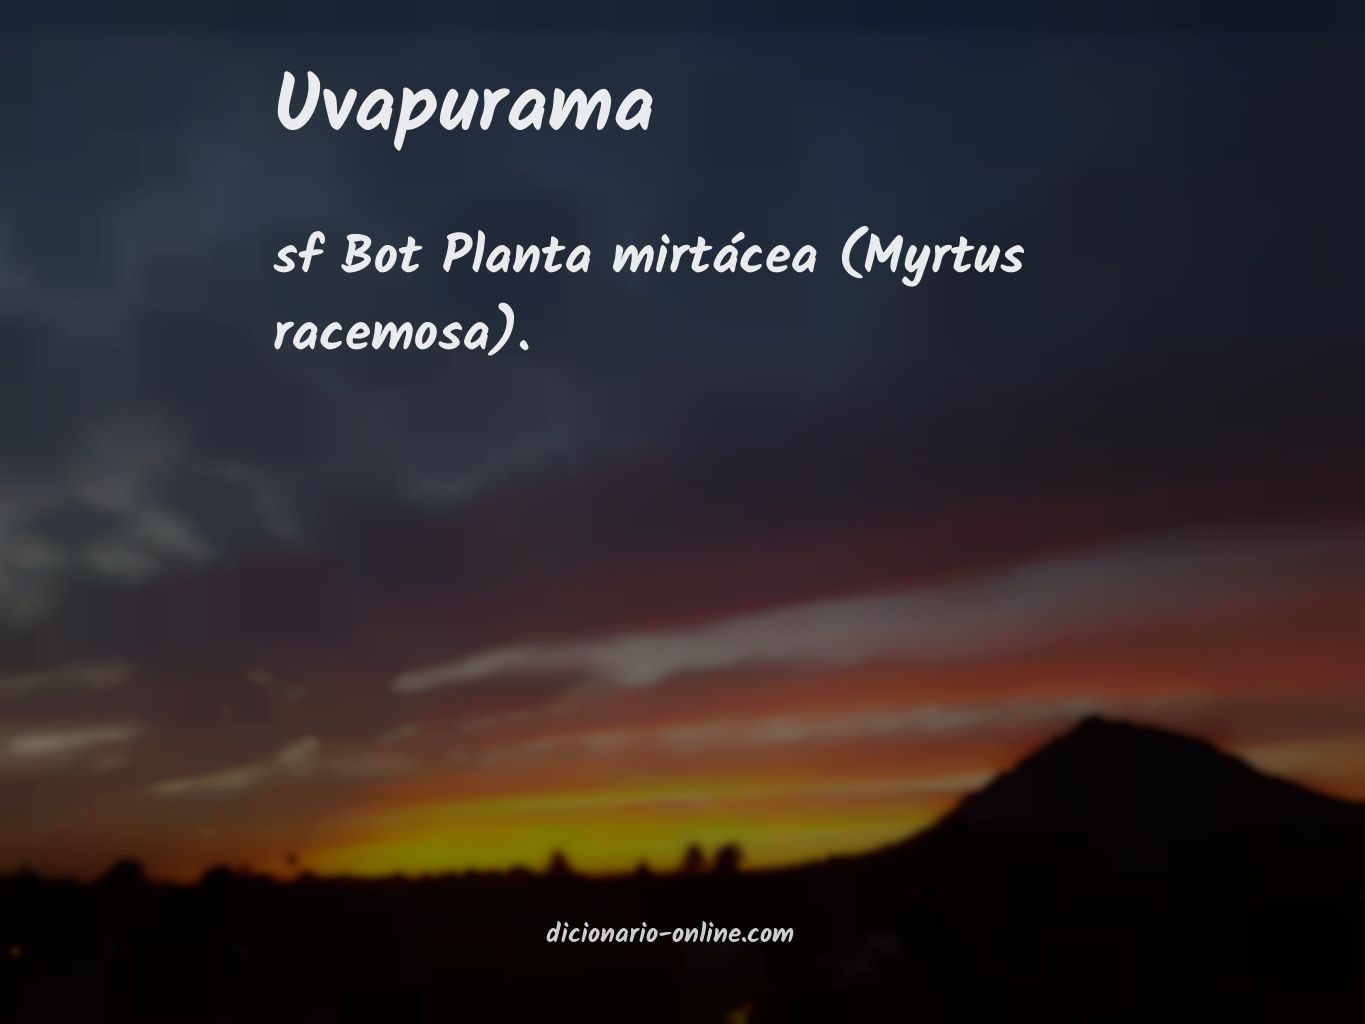 Significado de uvapurama